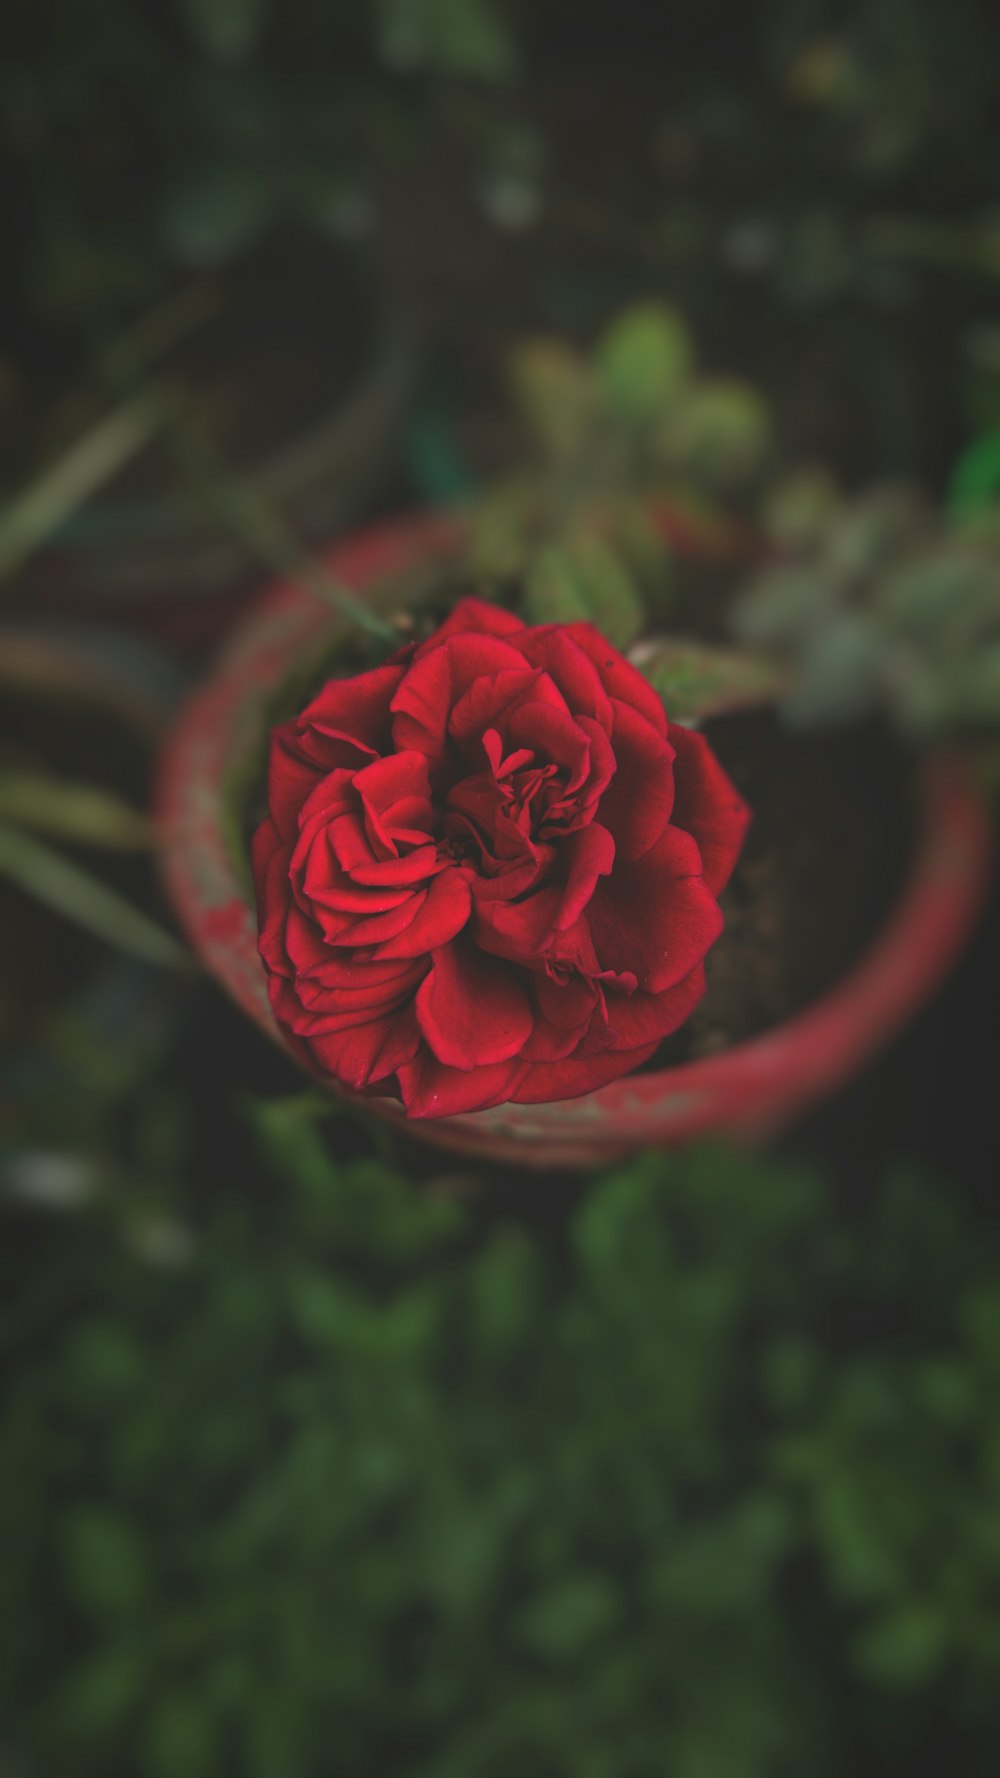 Une rose rouge est dans un vase rouge